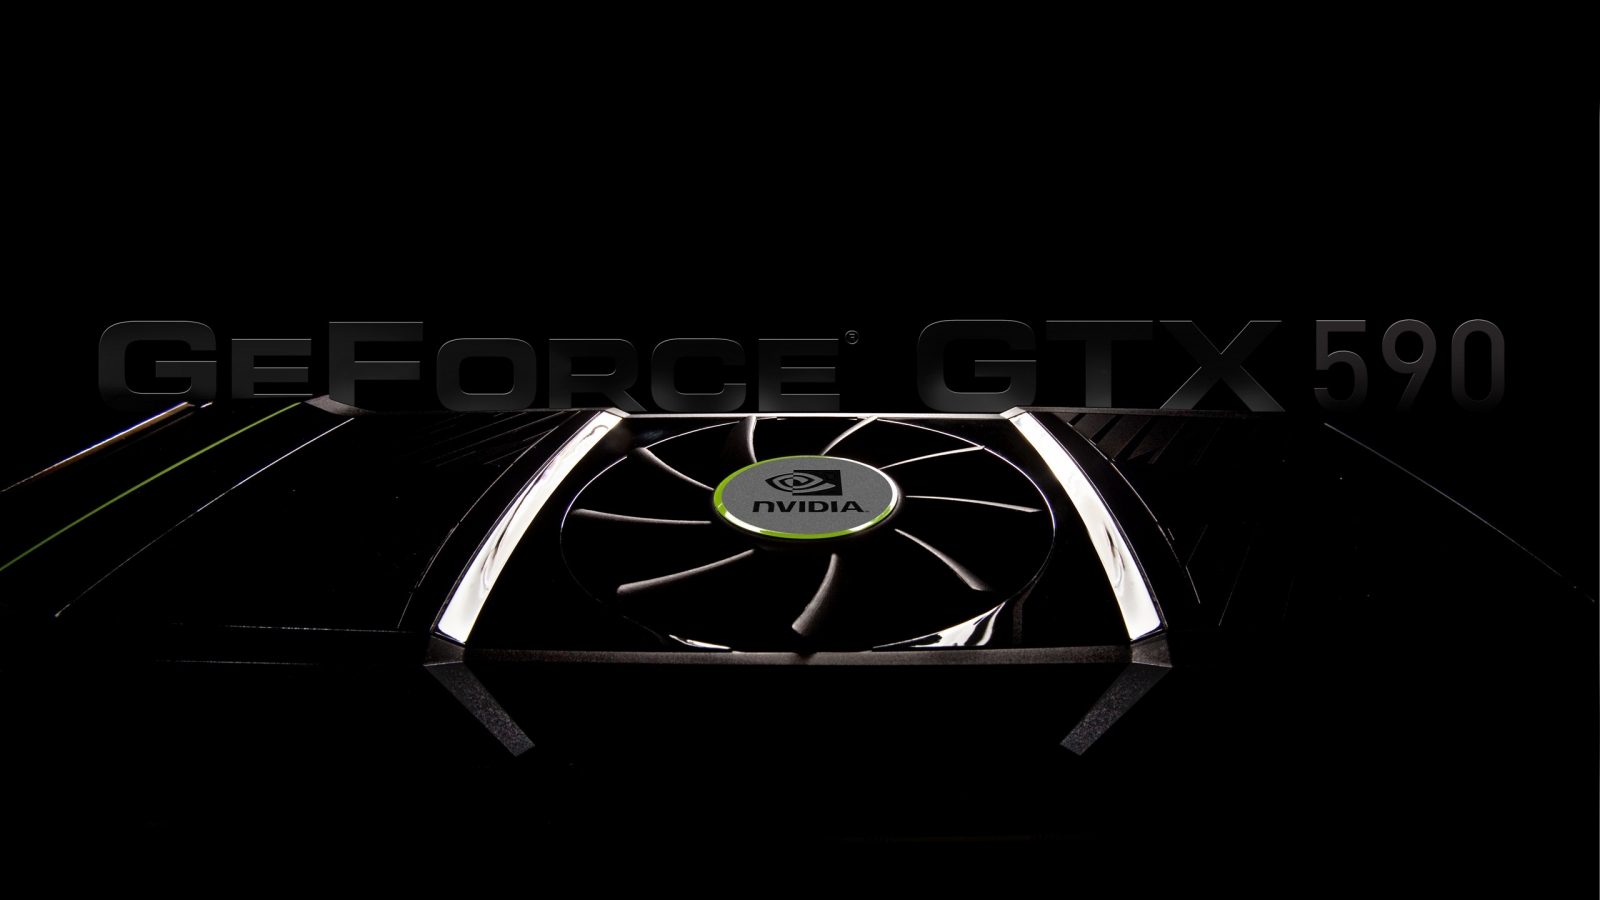 GeForce GTX 590 for 1600 x 900 HDTV resolution